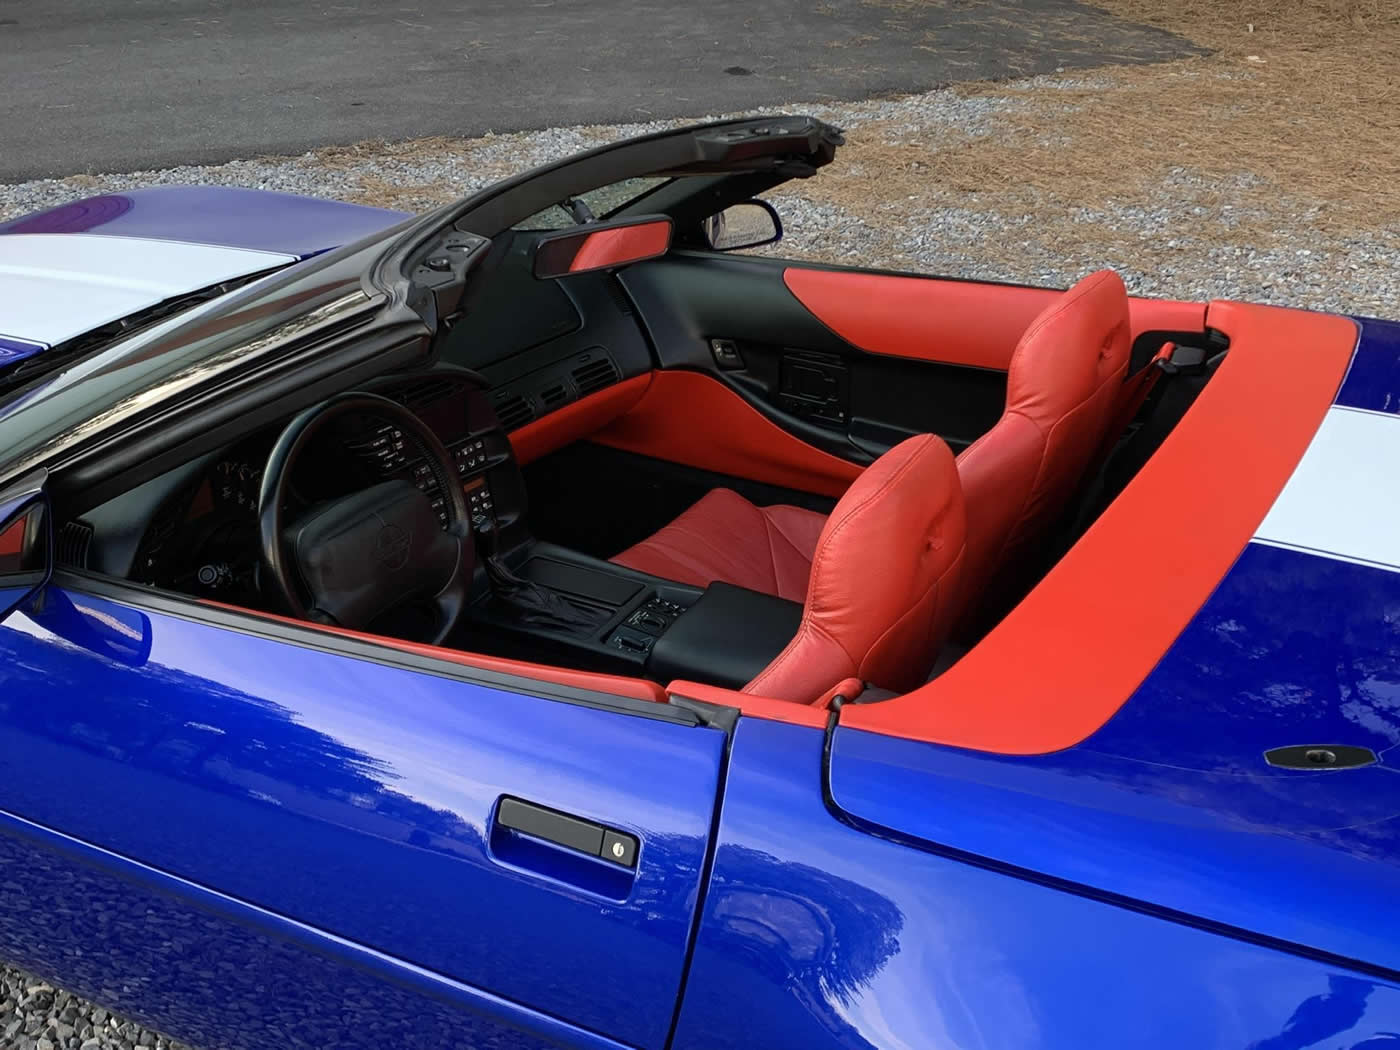 1996 Corvette Grand Sport Convertible